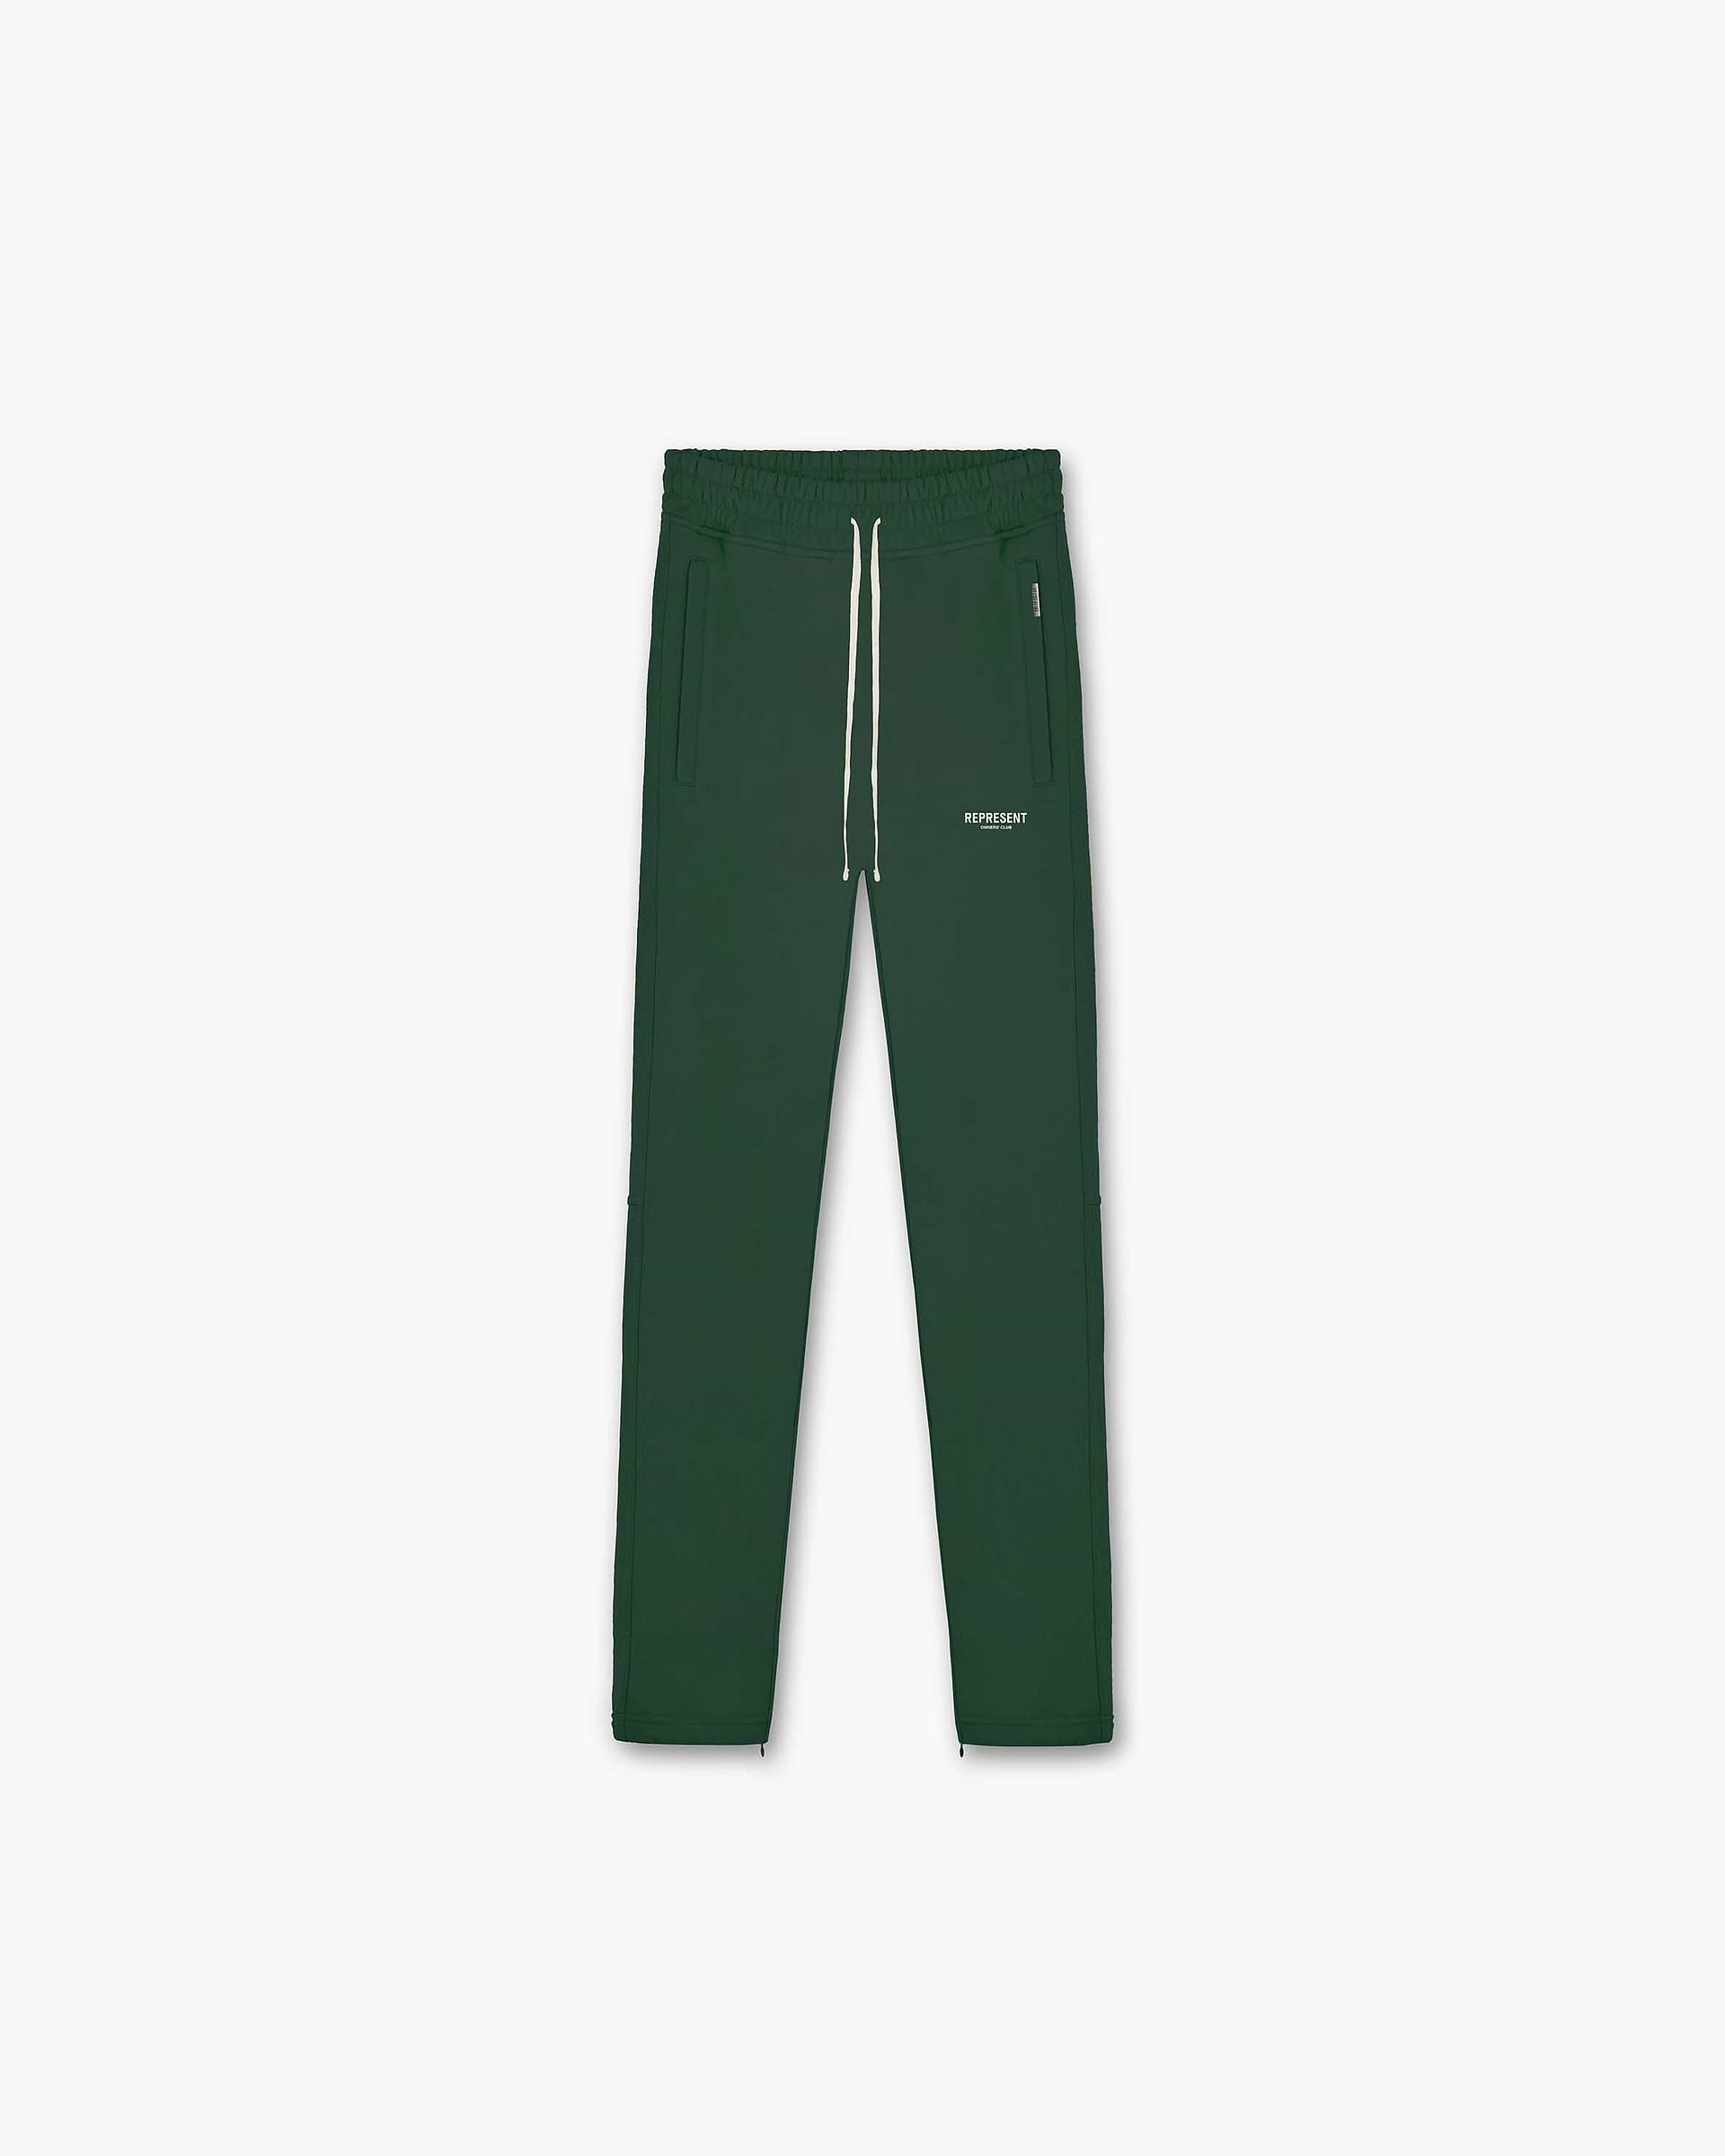 Represent Owners Club Zip Sweatpant | Racing Green Pants Owners Club | Represent Clo